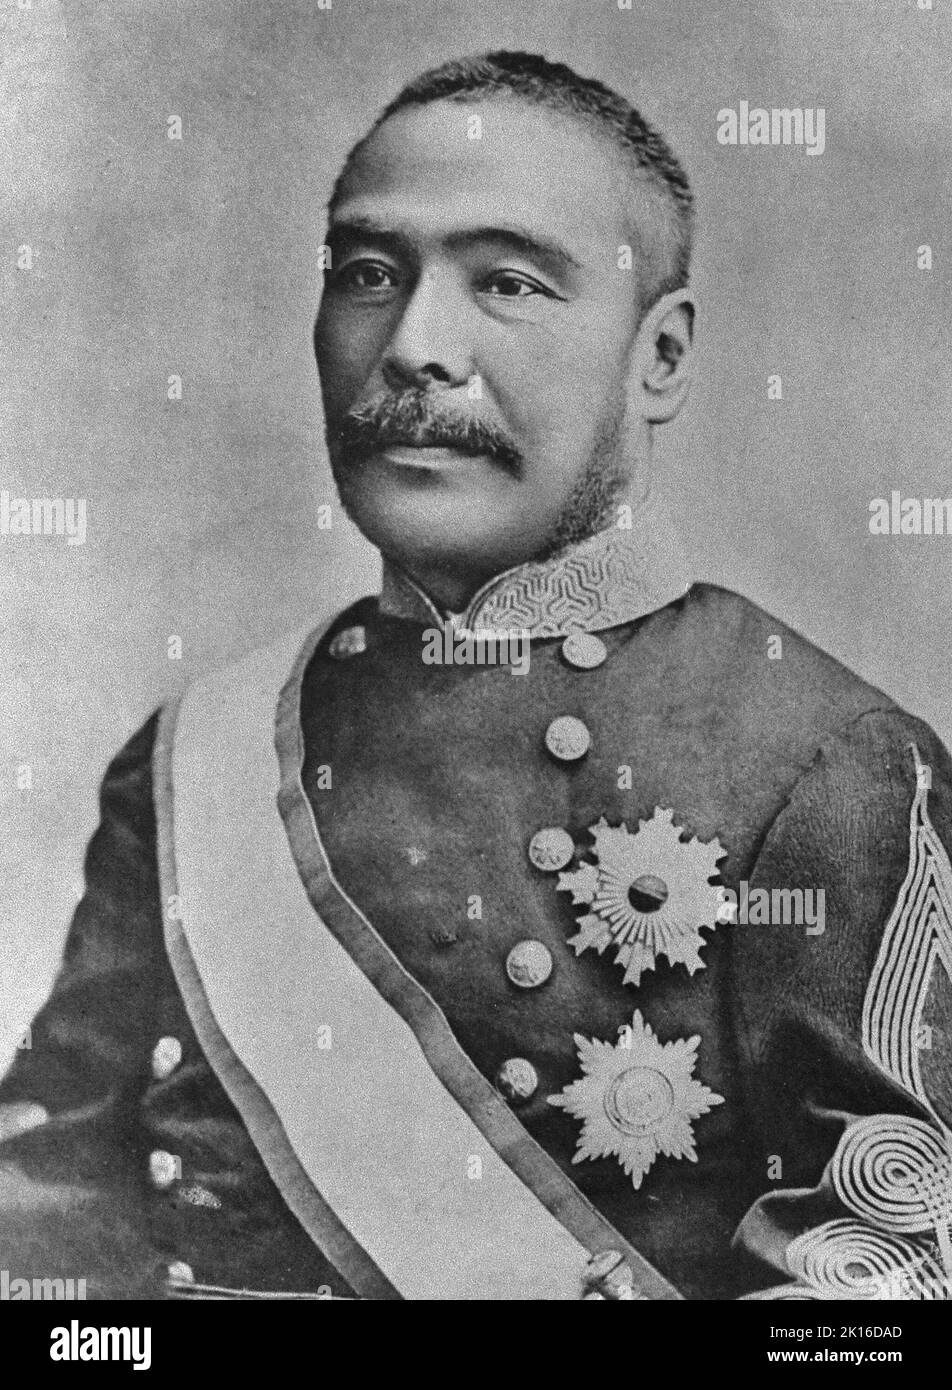 Portrait de Kuroda Kiyotaka (1840-1900), politicien japonais de l'époque Meiji, lieutenant général de l'Armée impériale japonaise, deuxième Premier ministre du Japon (1888-1889). Il a également été vice-président de la Commission de développement Hokkaido (Kaitaku-shi). Banque D'Images